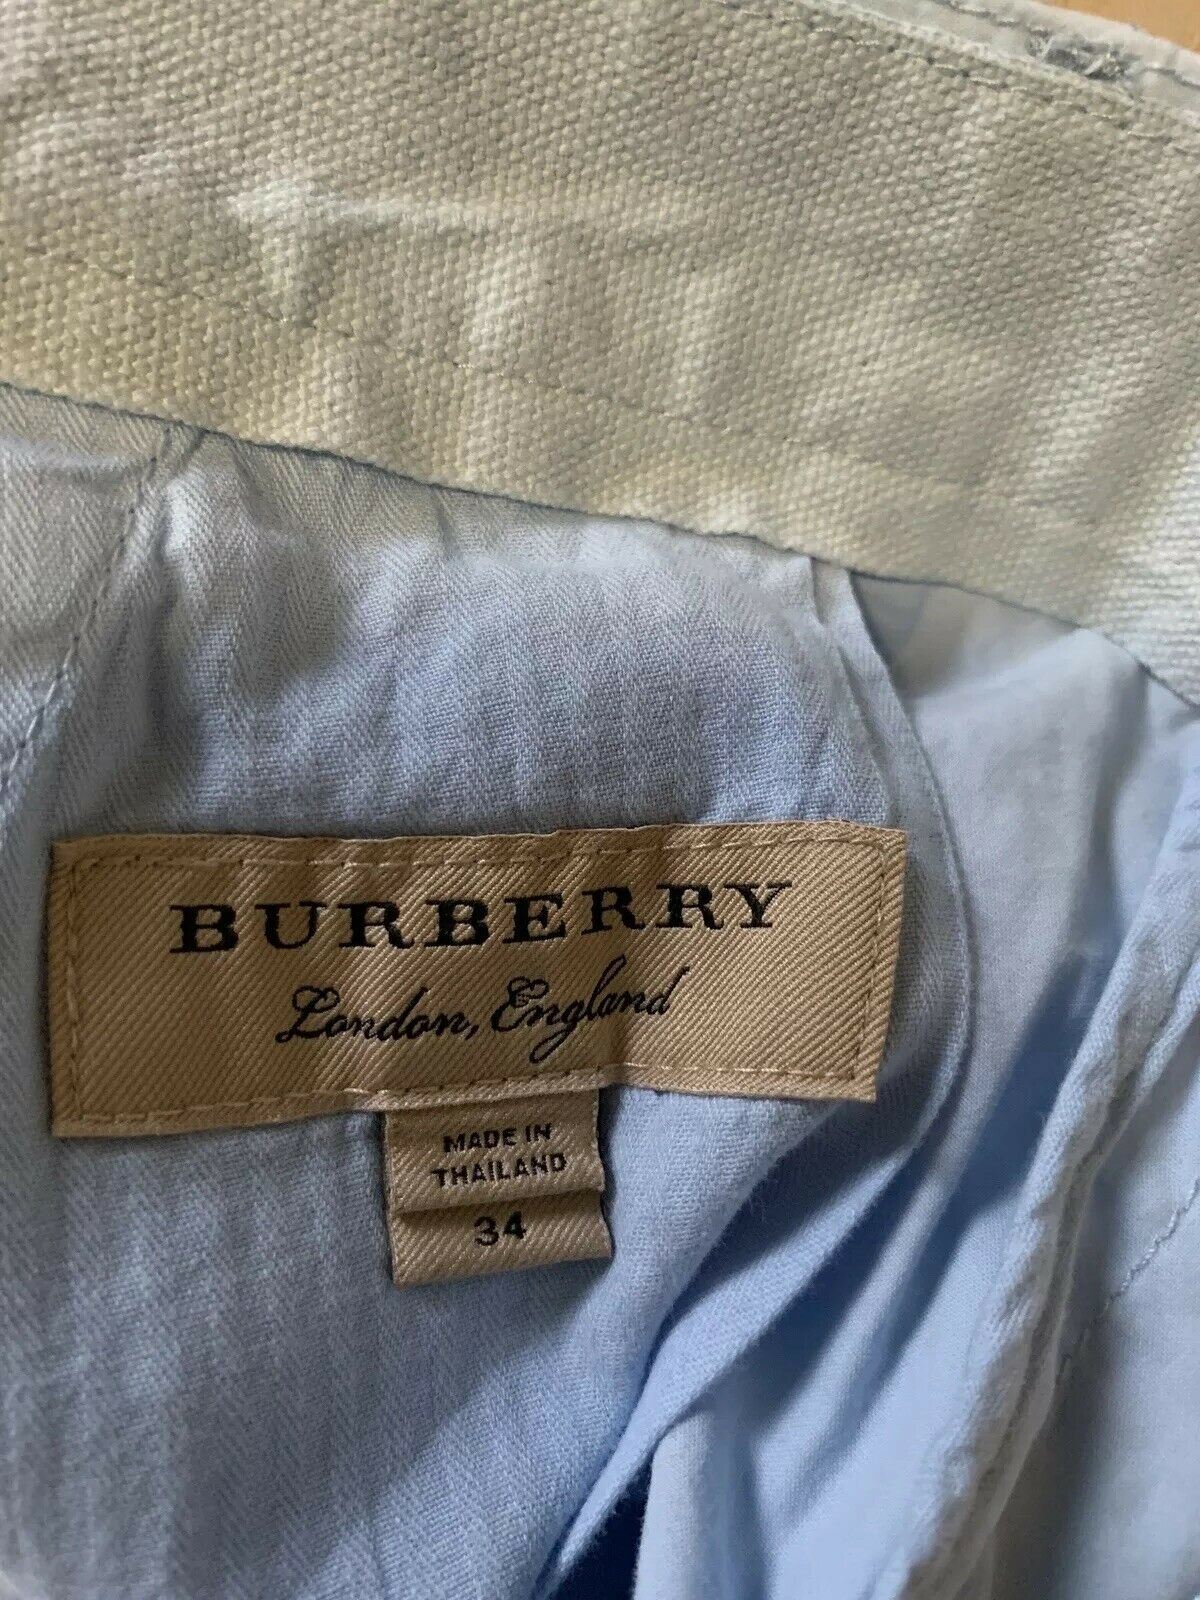 New $195 Burberry Short Pants Pale Opal Blue Size 36